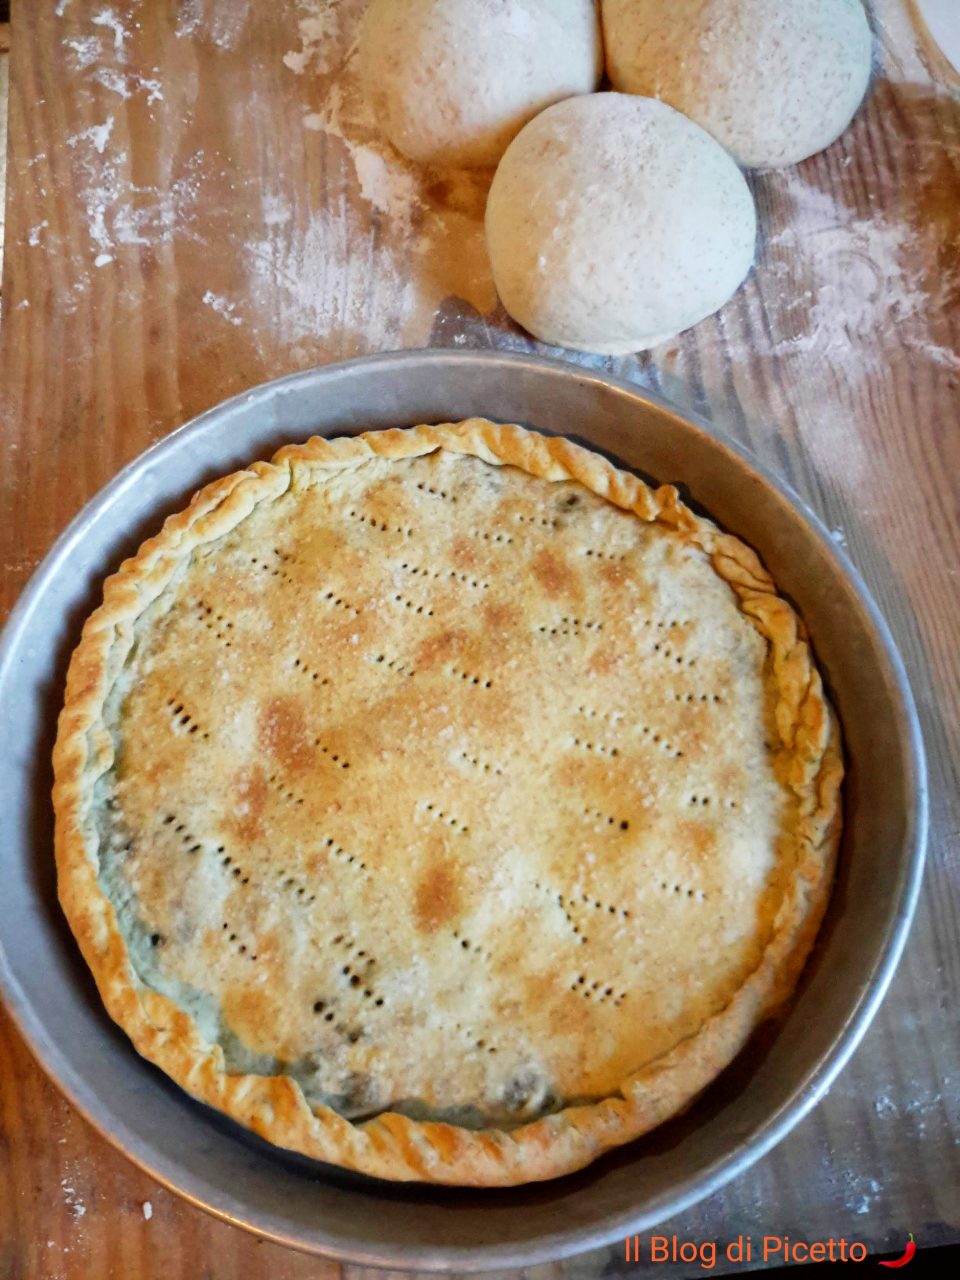 Pizza rustica ripiena di broccoli di rapa (detti anche cime di rapa o friarielli) cucinati alla calabrese